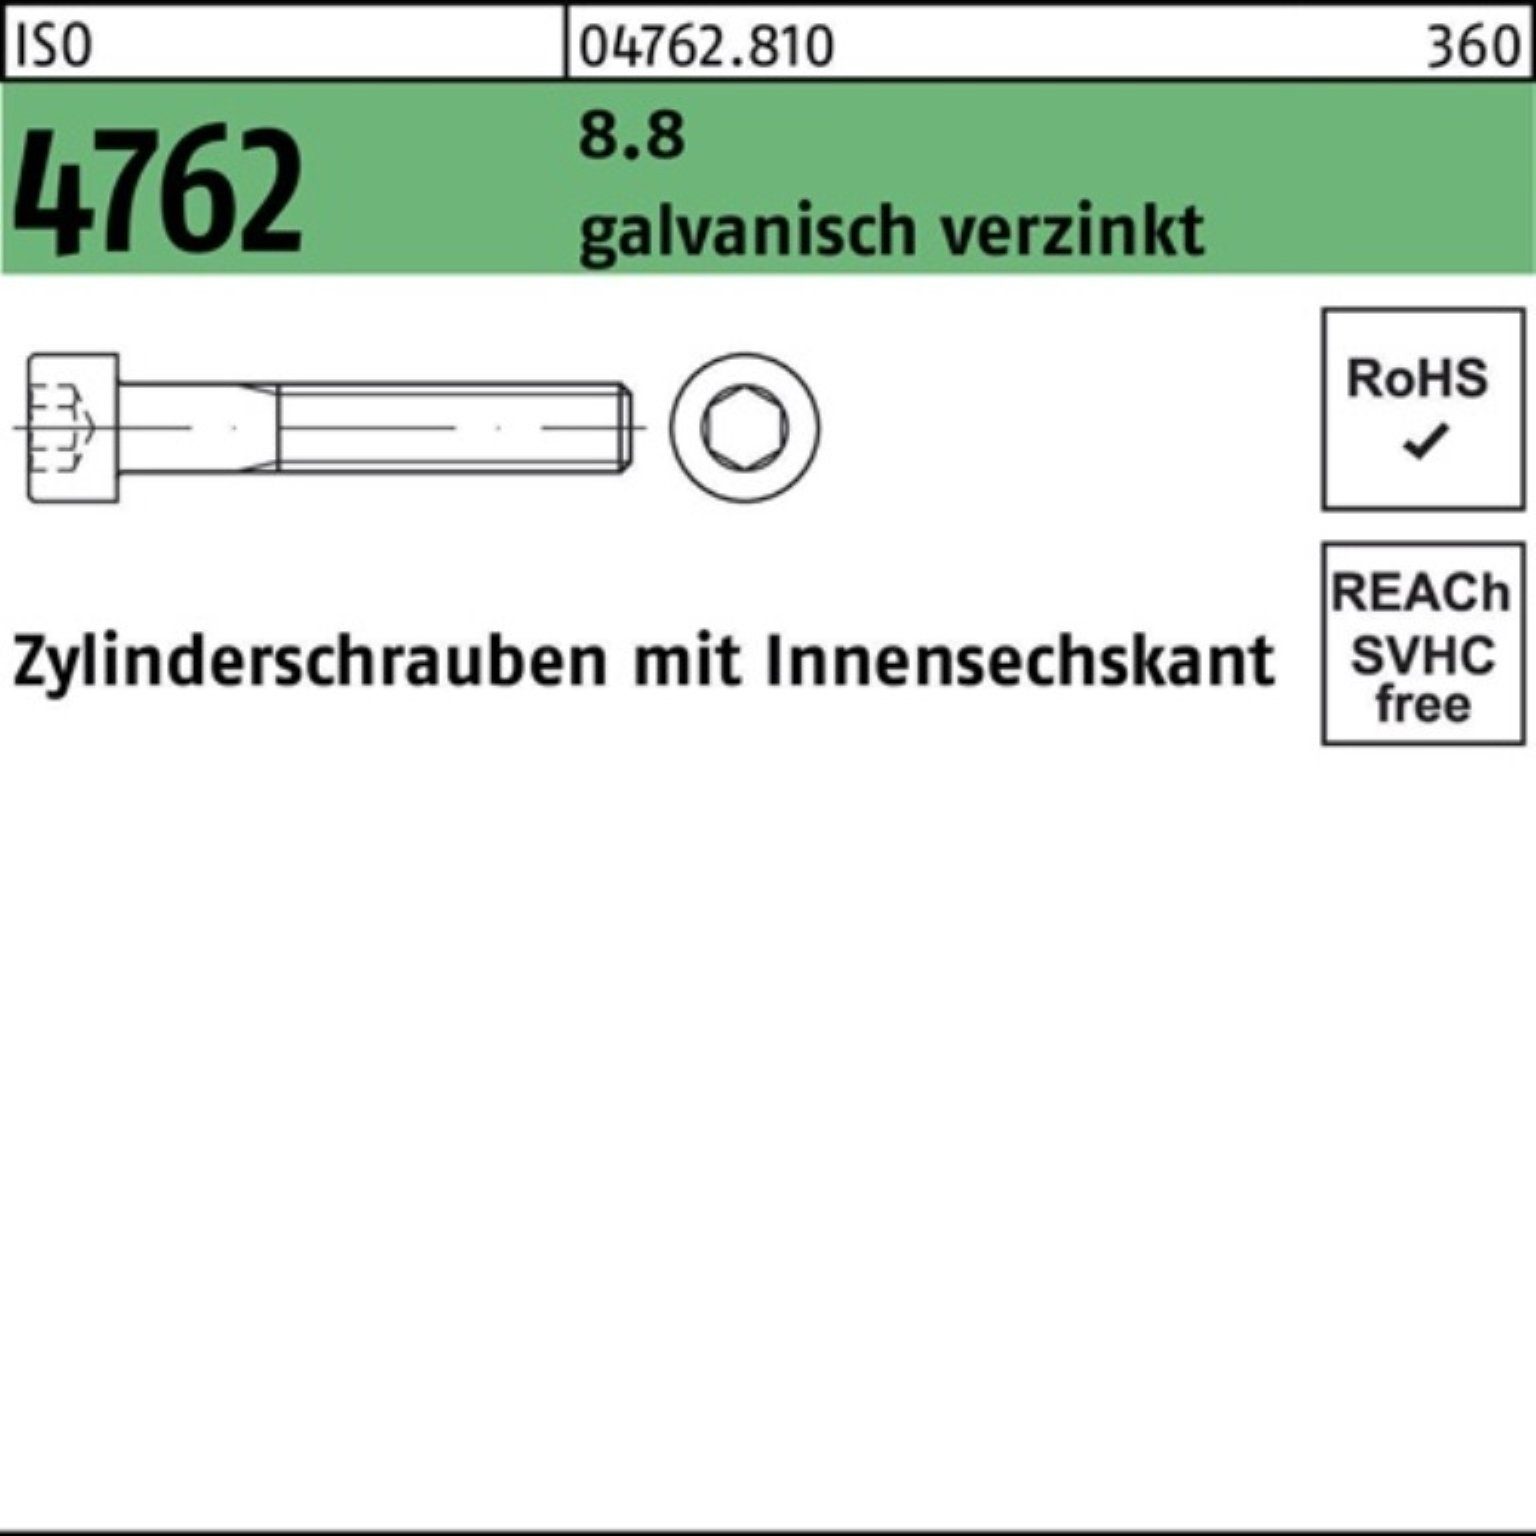 Zylinderschraube Zylinderschraube 100er ISO Reyher galv.verz. Innen-6kt 4762 5 8.8 M12x95 Pack